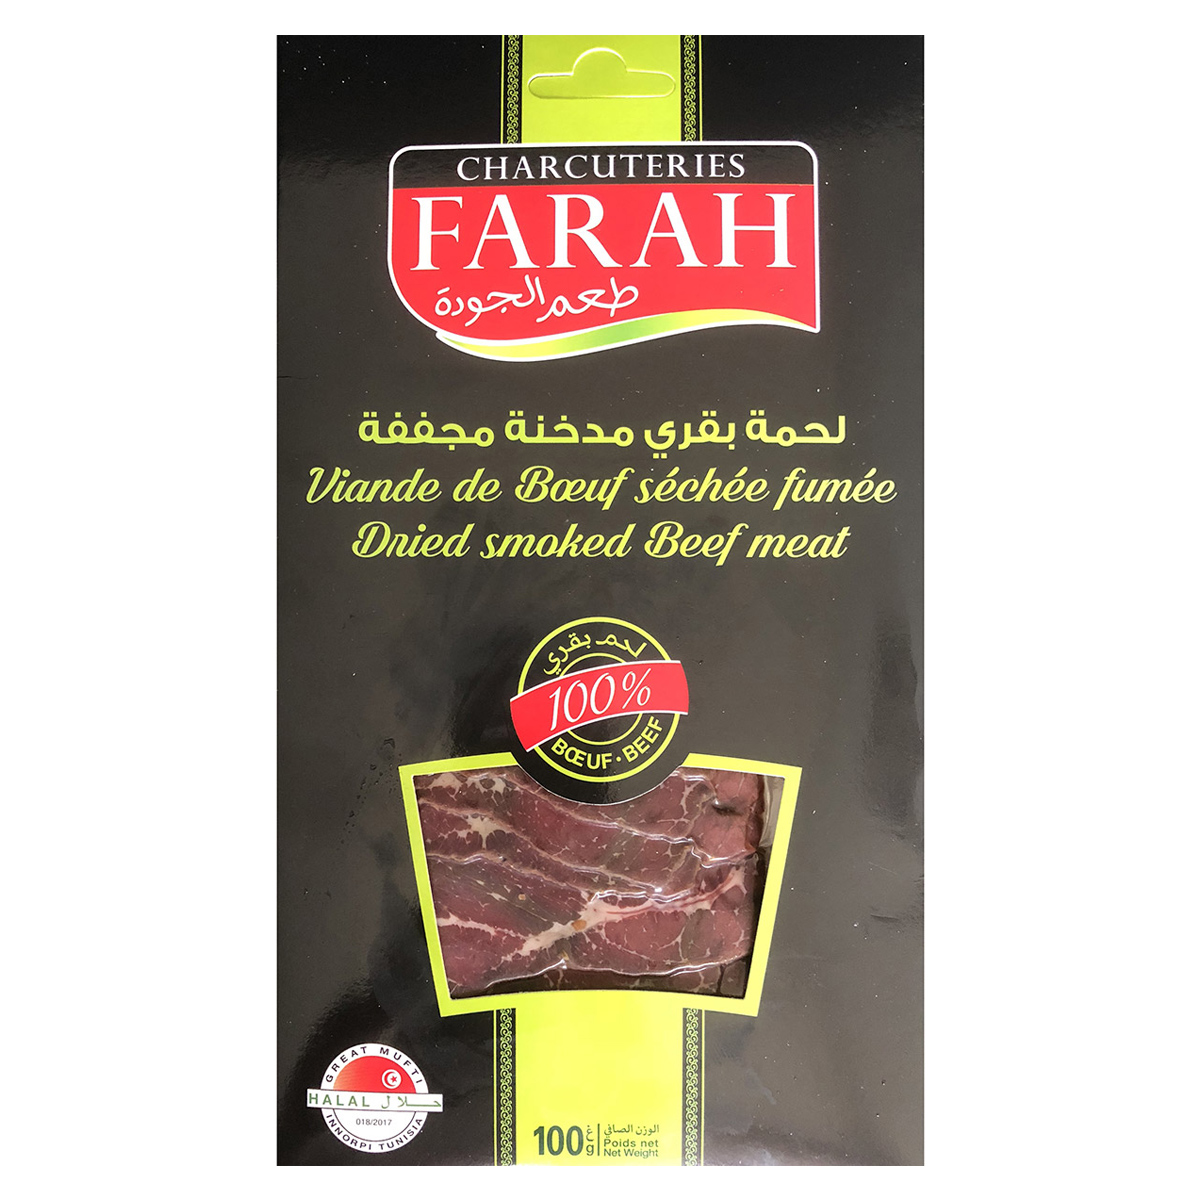 Farah - Viande de bœuf séchée fumée (100g) - FARAH